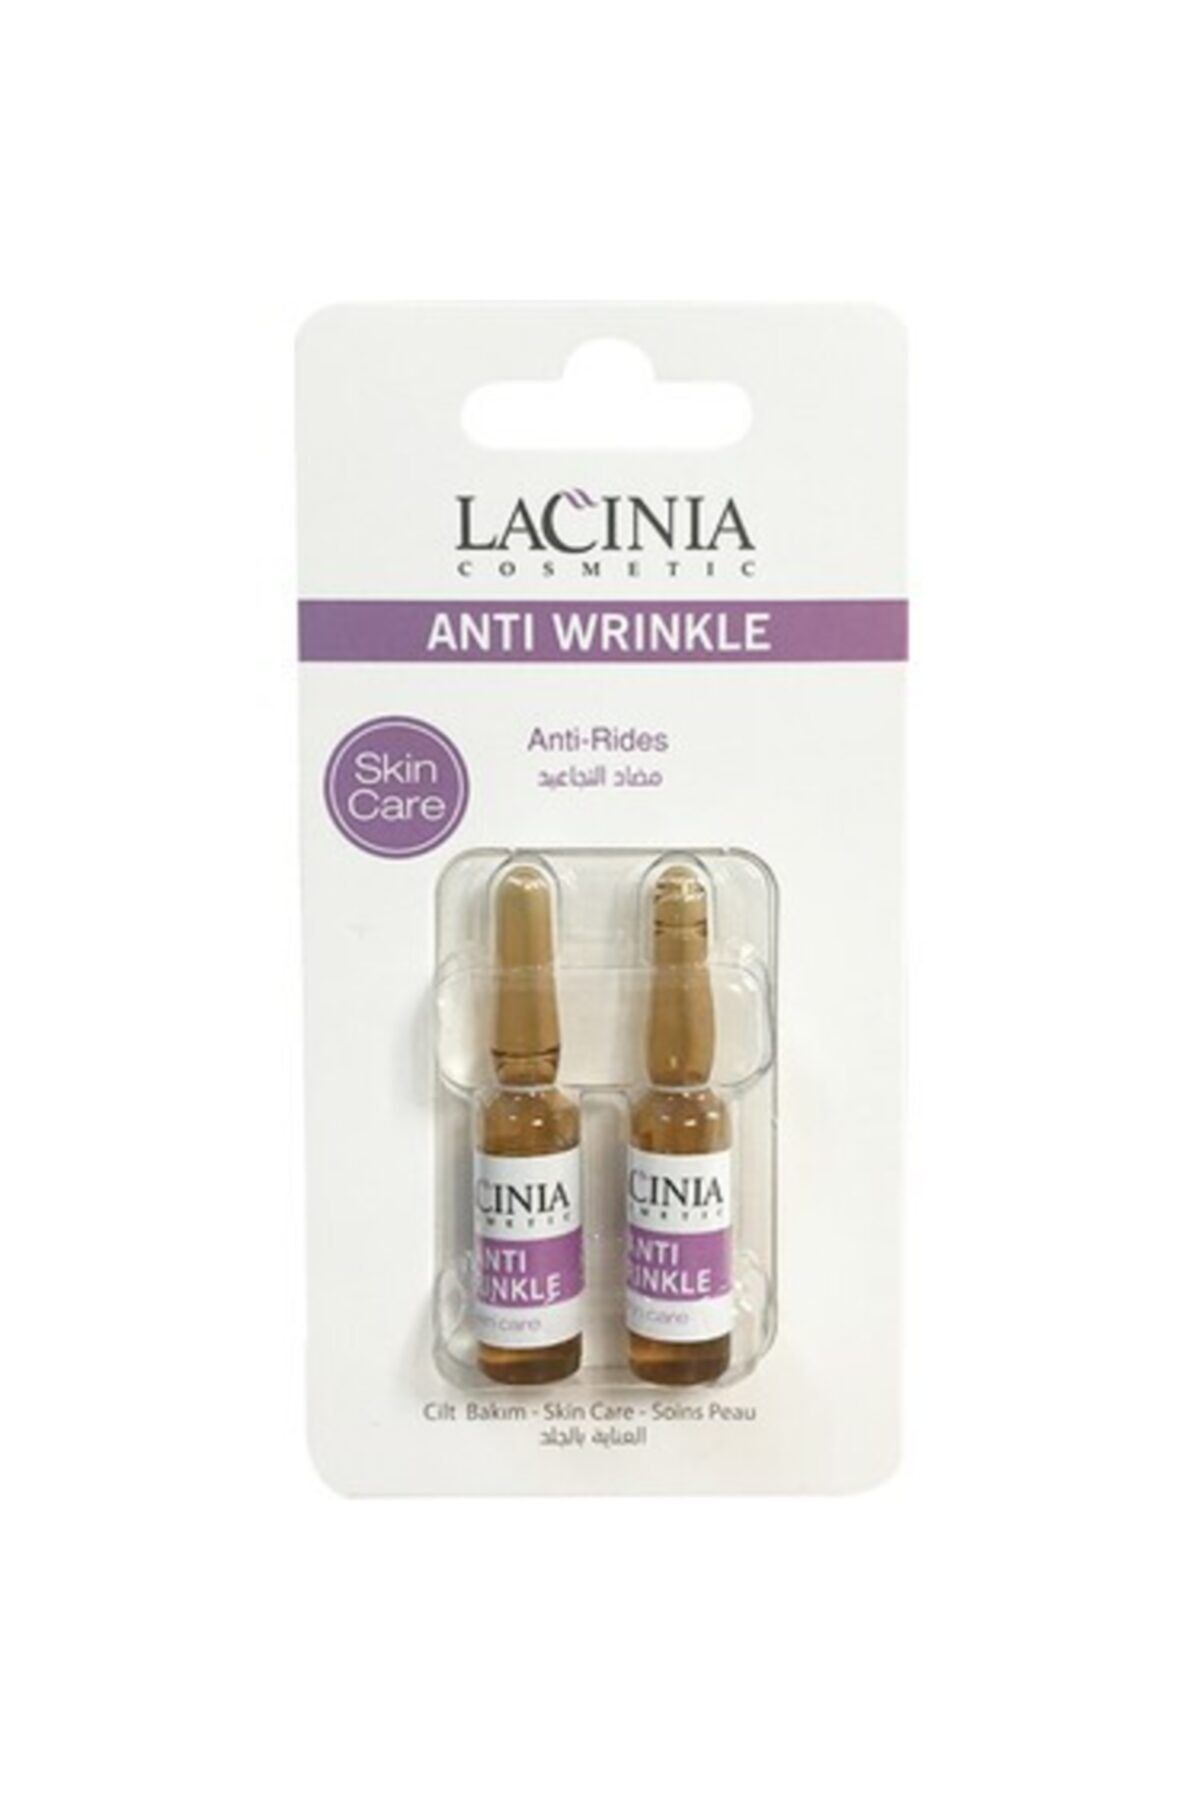 Lacinia Anti Wrinkle